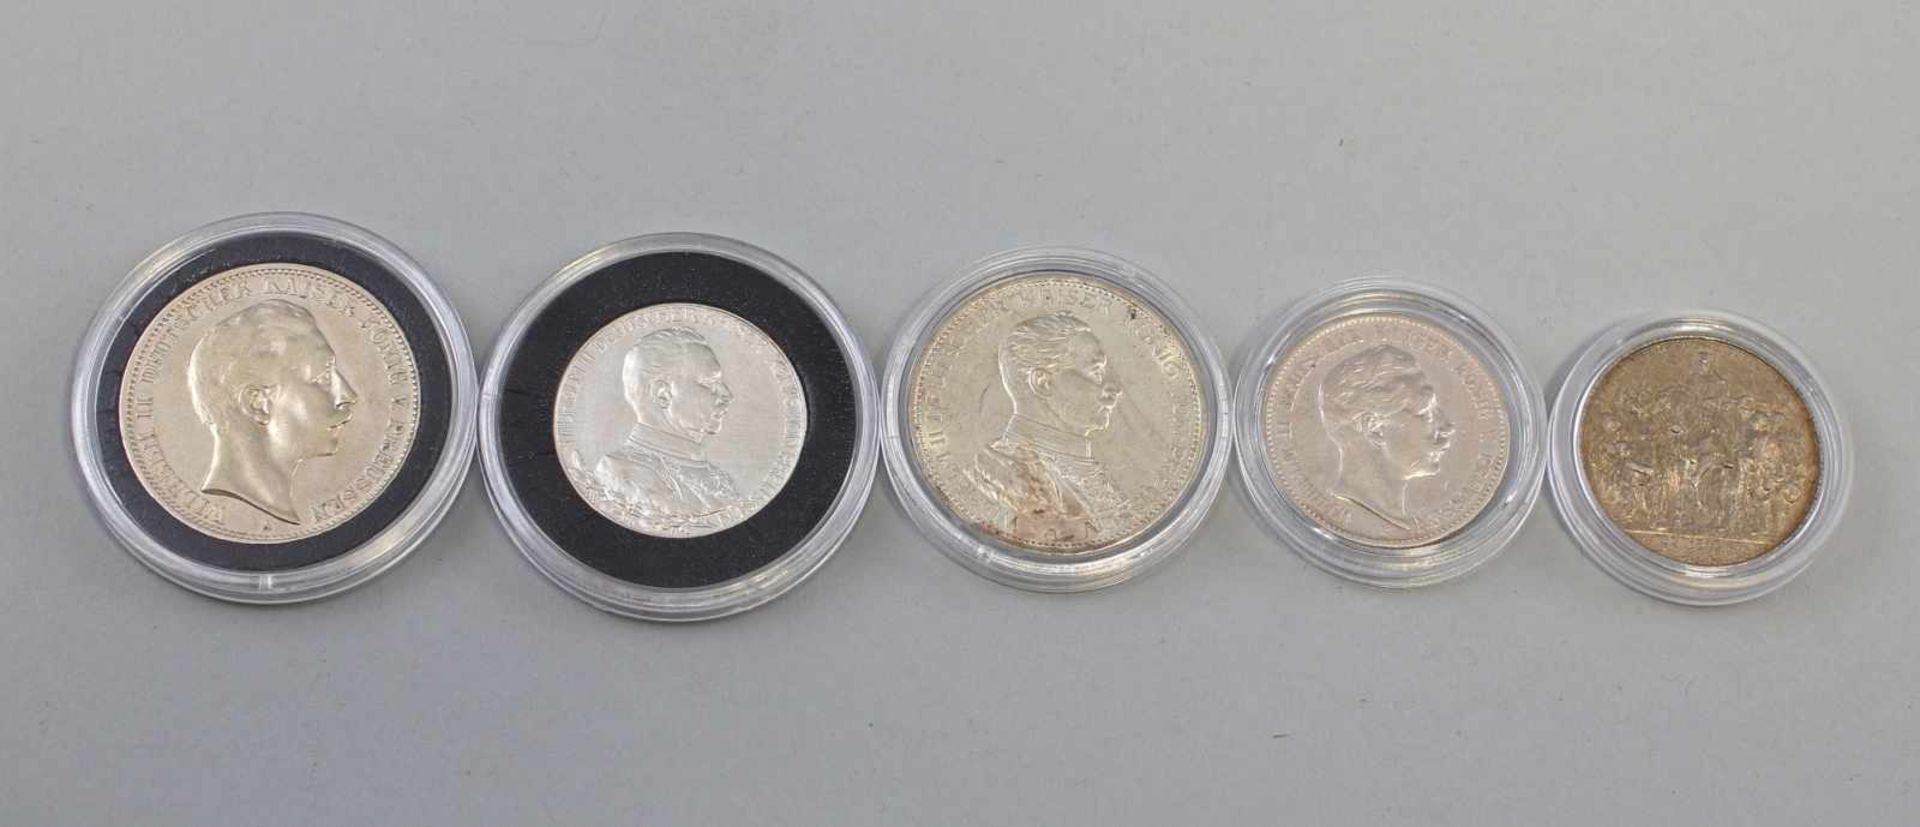 5 Silber-Münzen Deutsches Reich Preussen 1900-1914dabei 3 x 2 Mark 1900, 2 x 1913 und 2 x 3 Mark